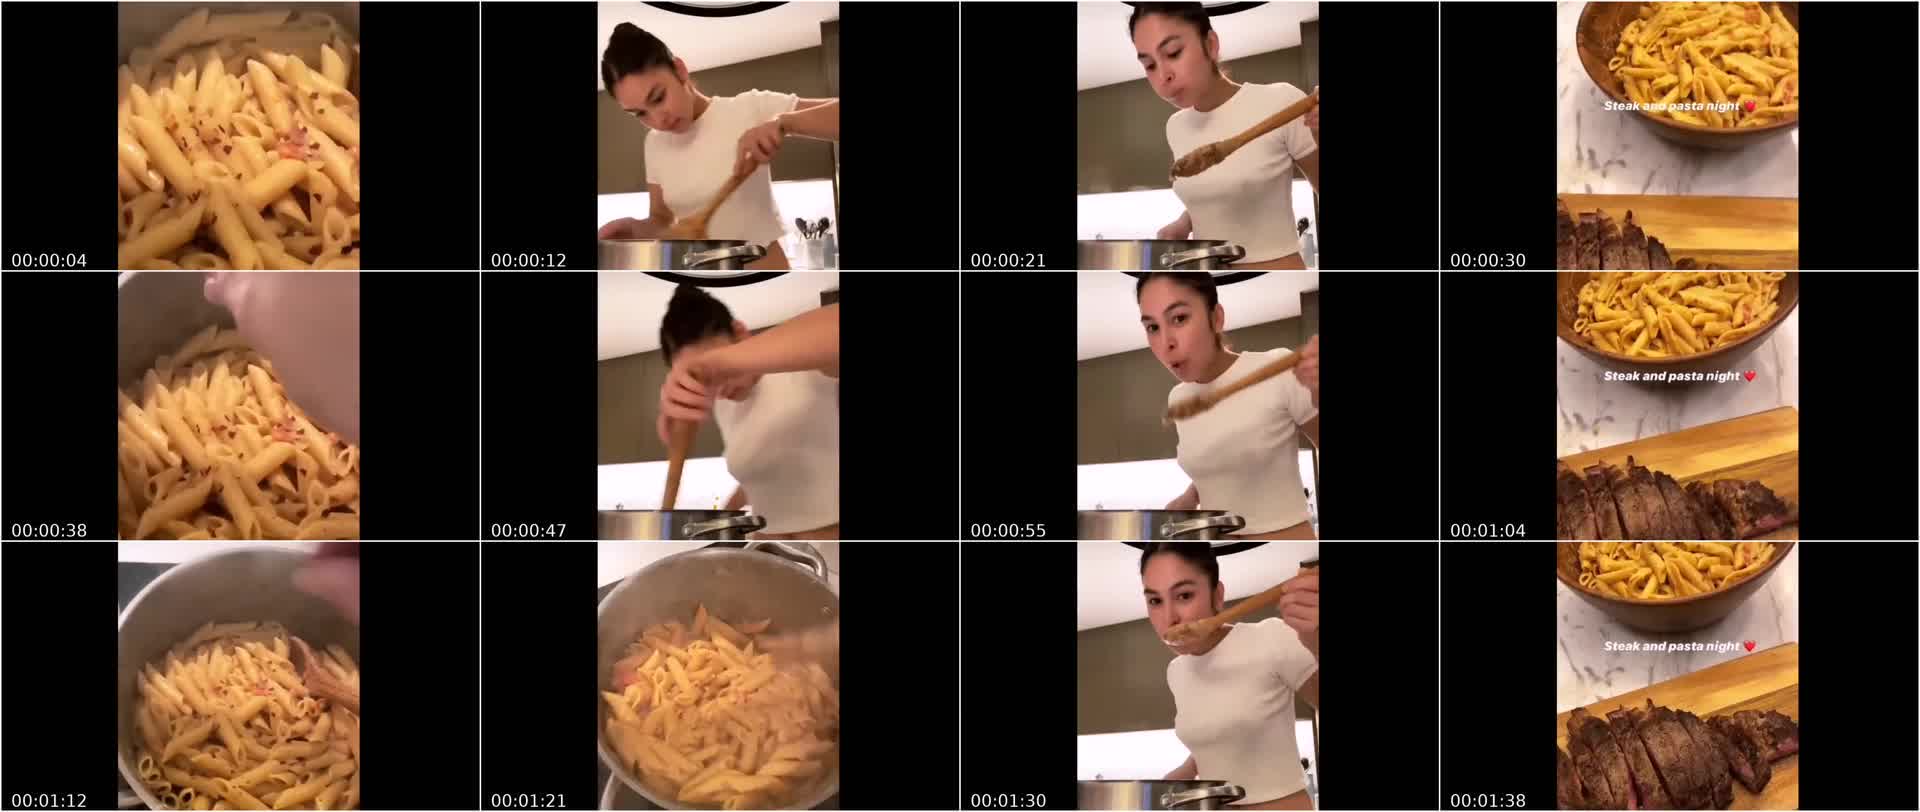 Julia Barretto No Bra Bakat Utong – Cooking na Ina Mo!